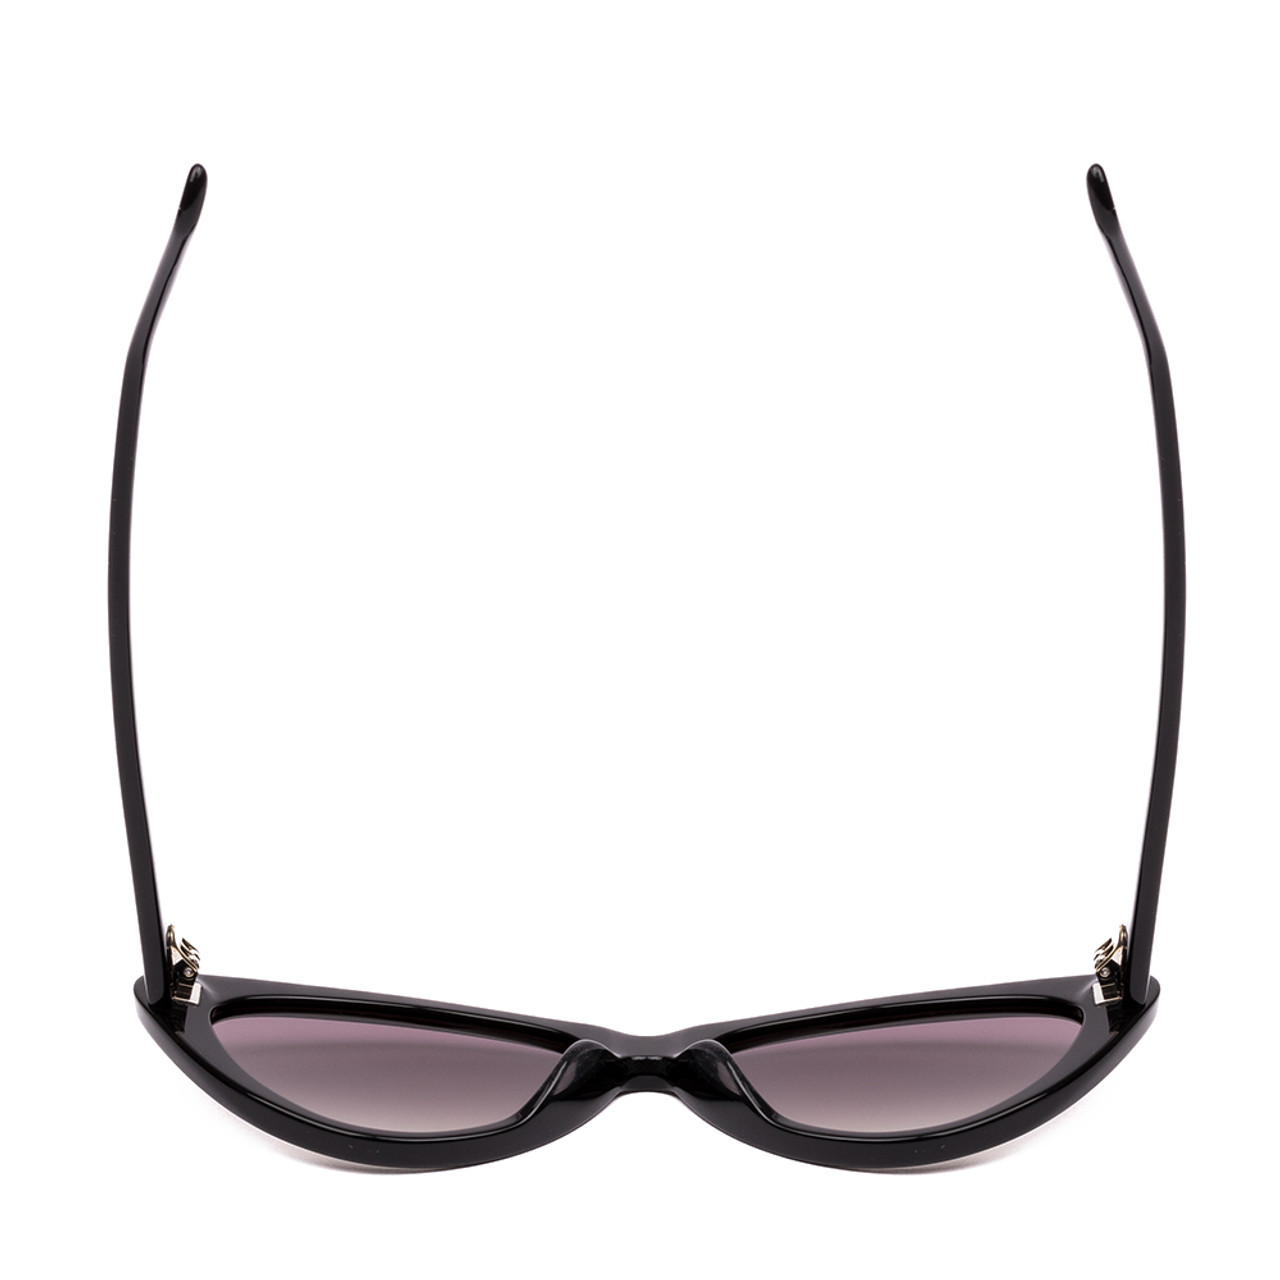 Top View of SITO SHADES SEDUCTION Cat Eye Designer Sunglasses in Black/Quartz Gradient 57 mm